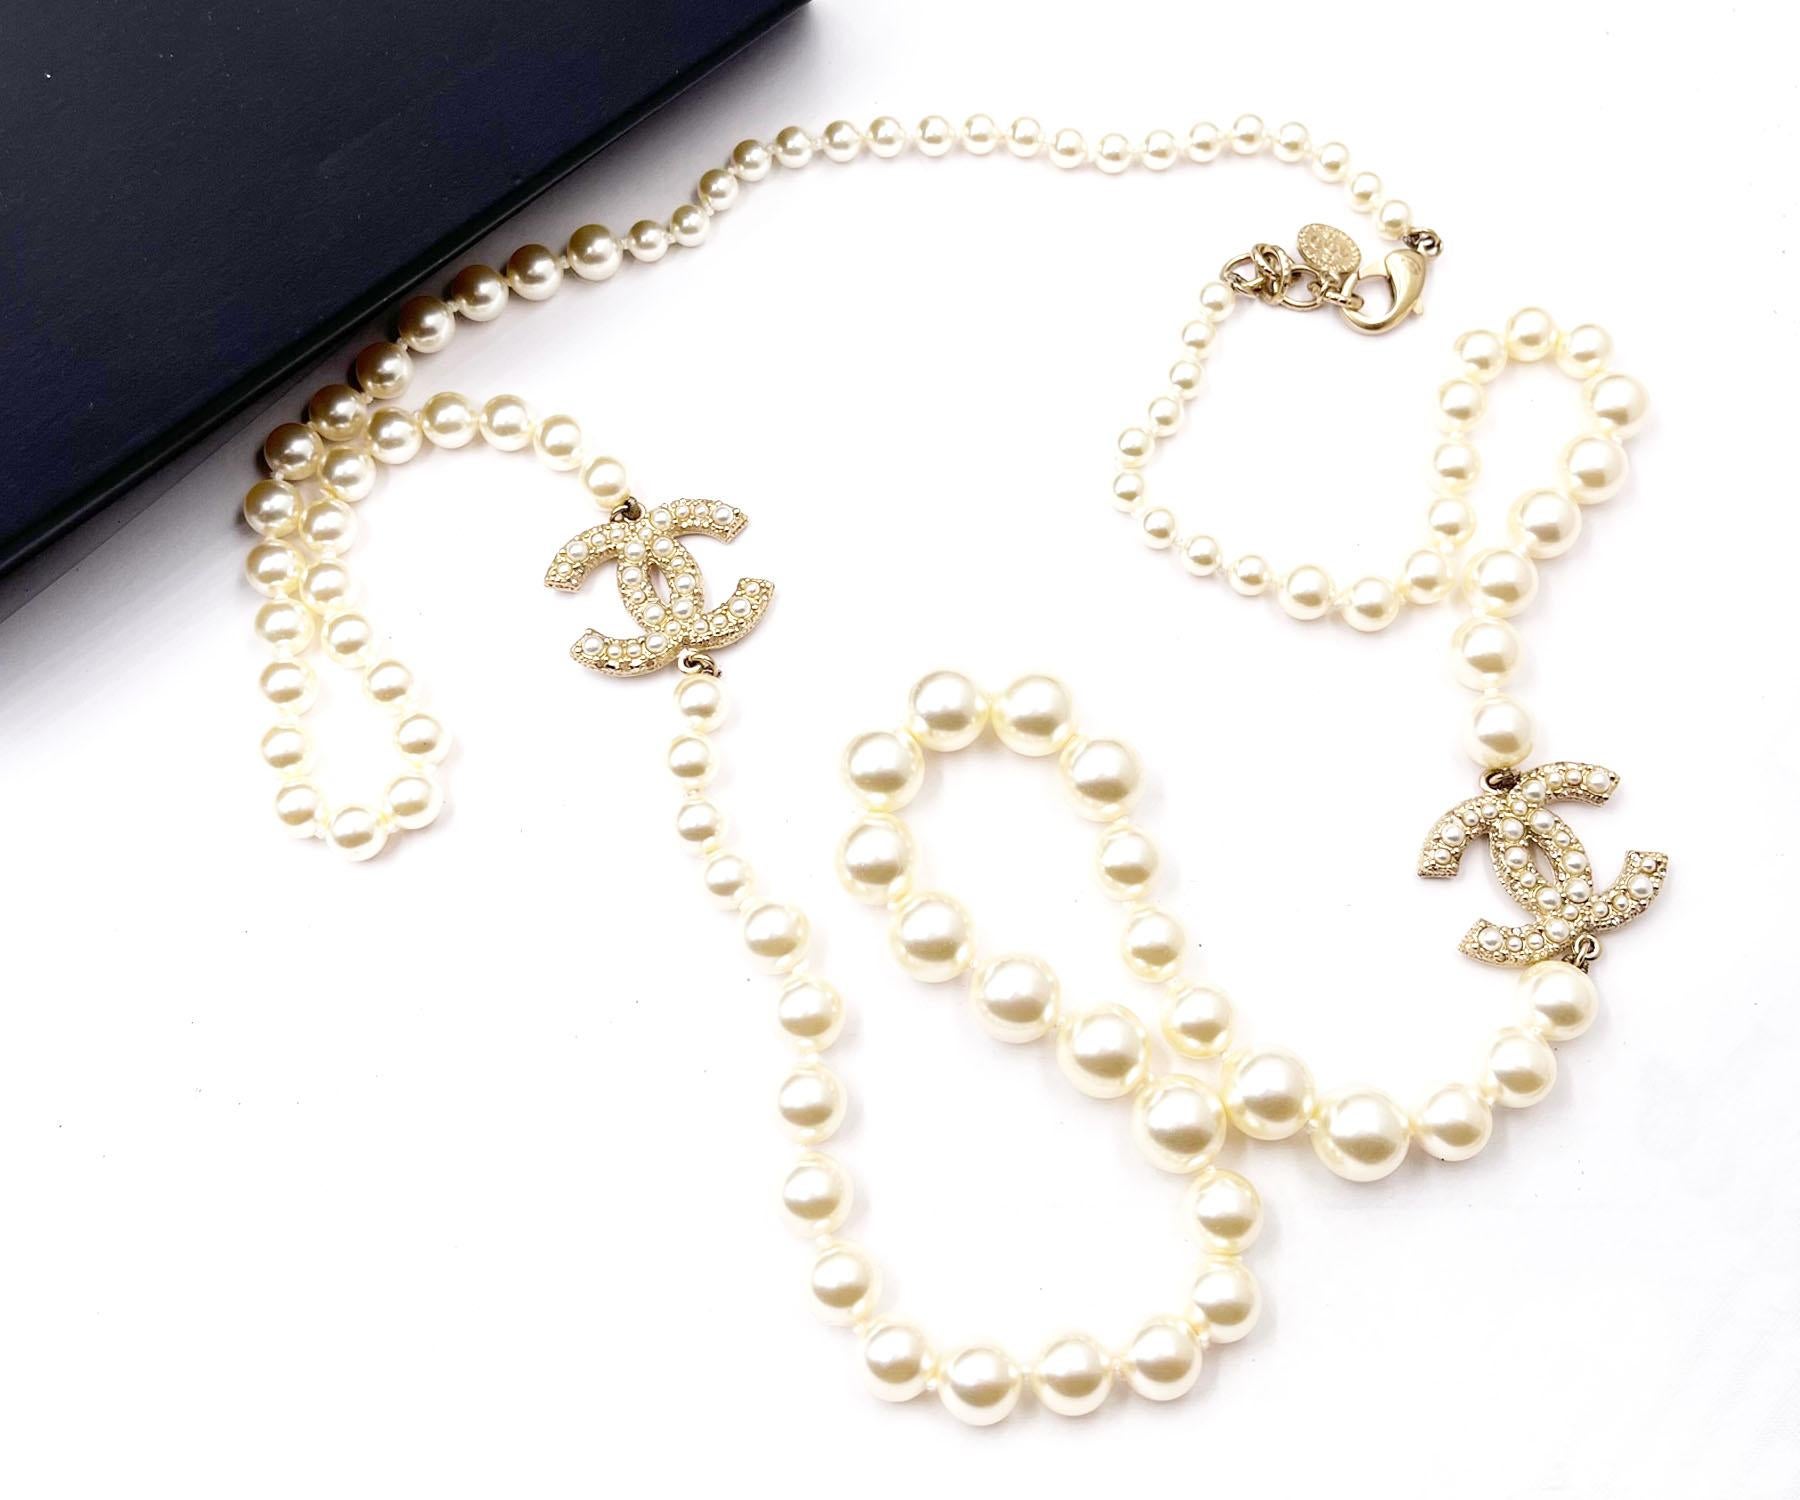 Chanel Classic Gold CC Collier long avec perles dispersées 100 ans d'anniversaire

*Marqué 17
*Fabriqué en France
*Livré avec la boîte d'origine

-Il mesure environ 40